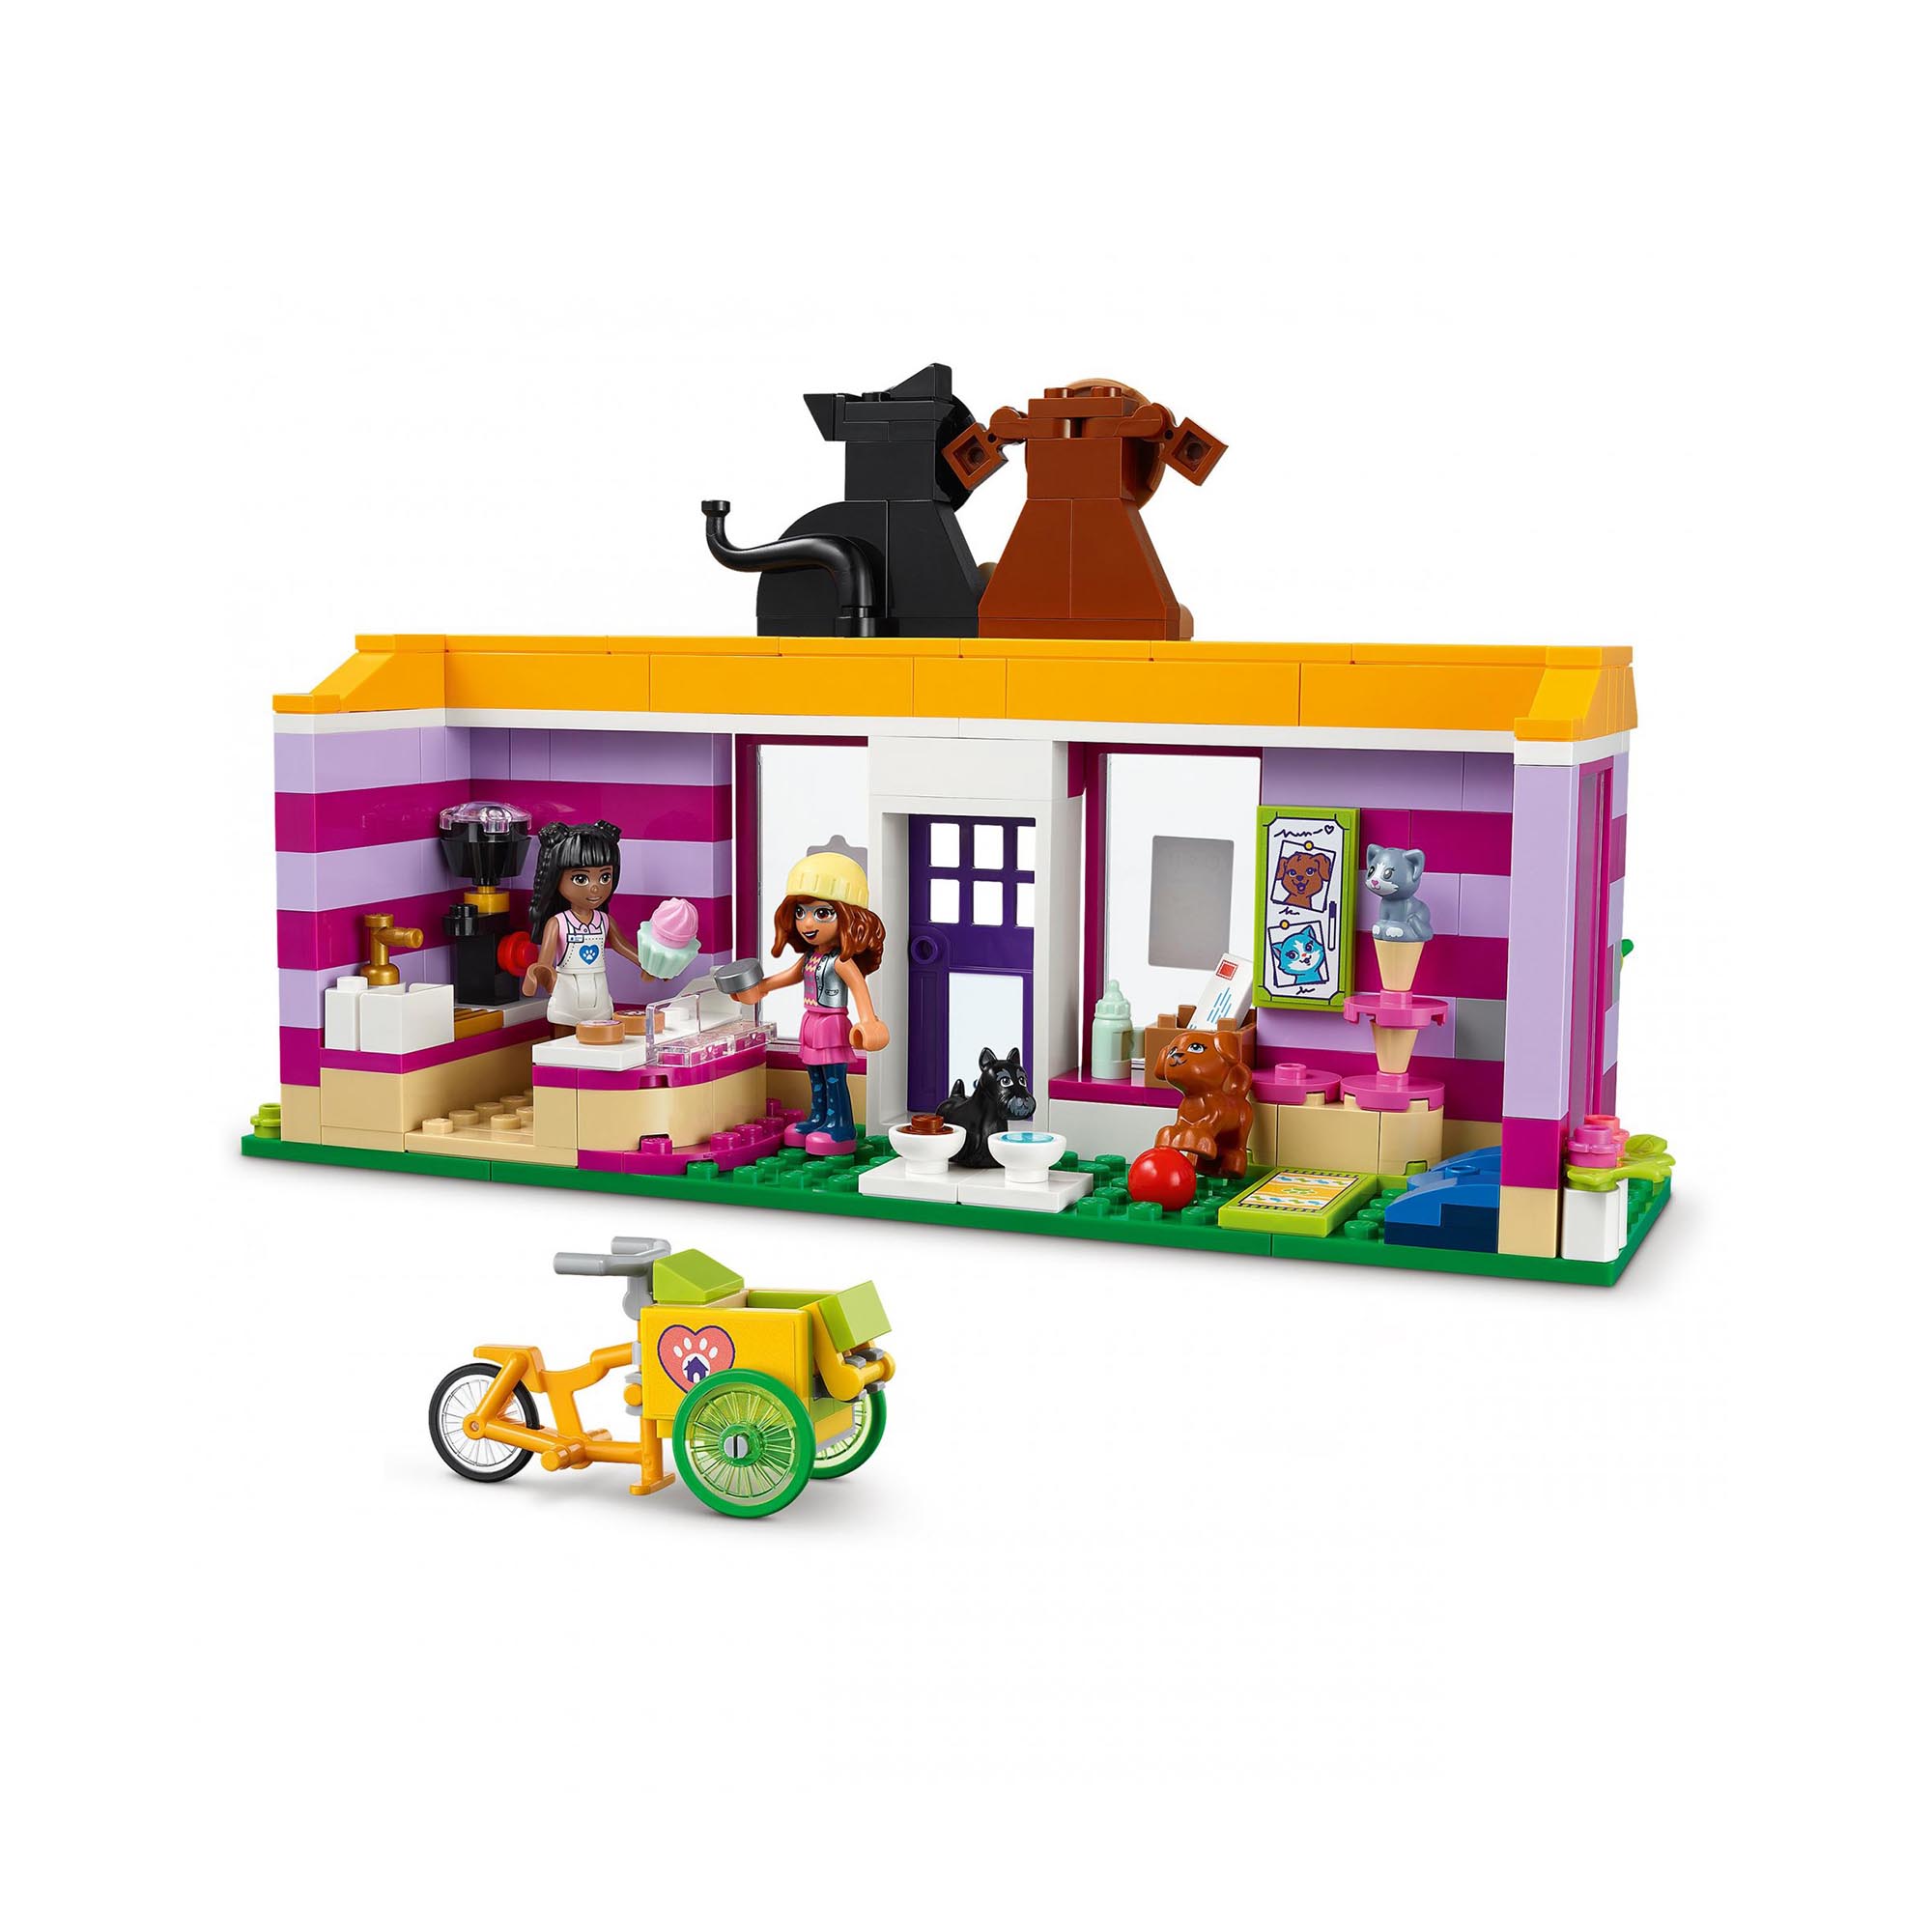 LEGO 41699 Friends Il Caffè di Adozione dei Cuccioli, Parco Giochi Animali, Gioc 41699, , large